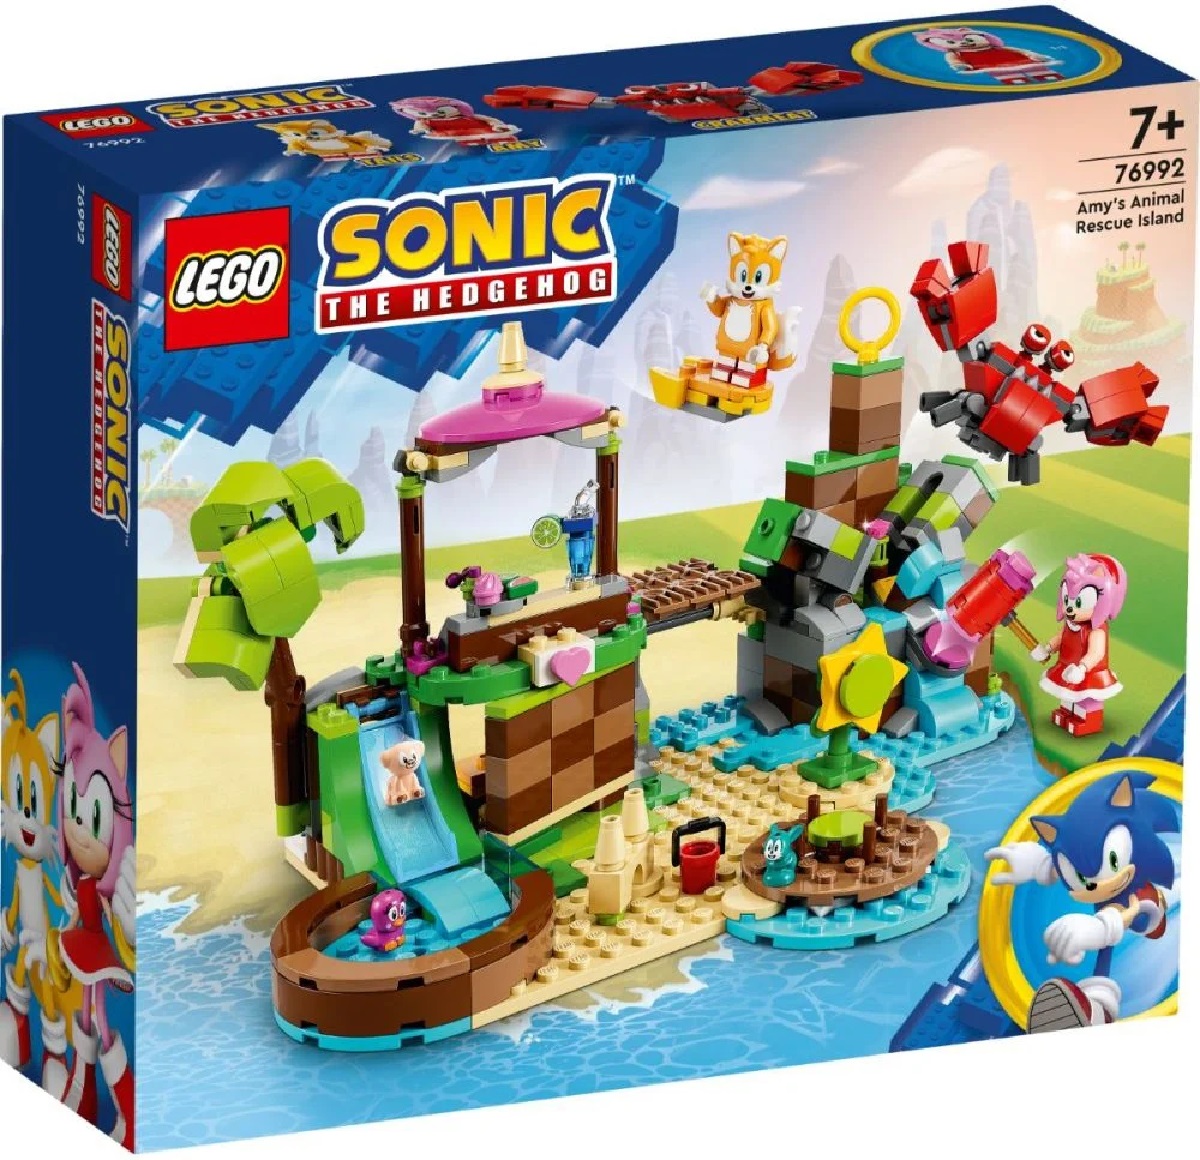 Lego Sonic. Insula lui Amy pentru salvarea animalelor